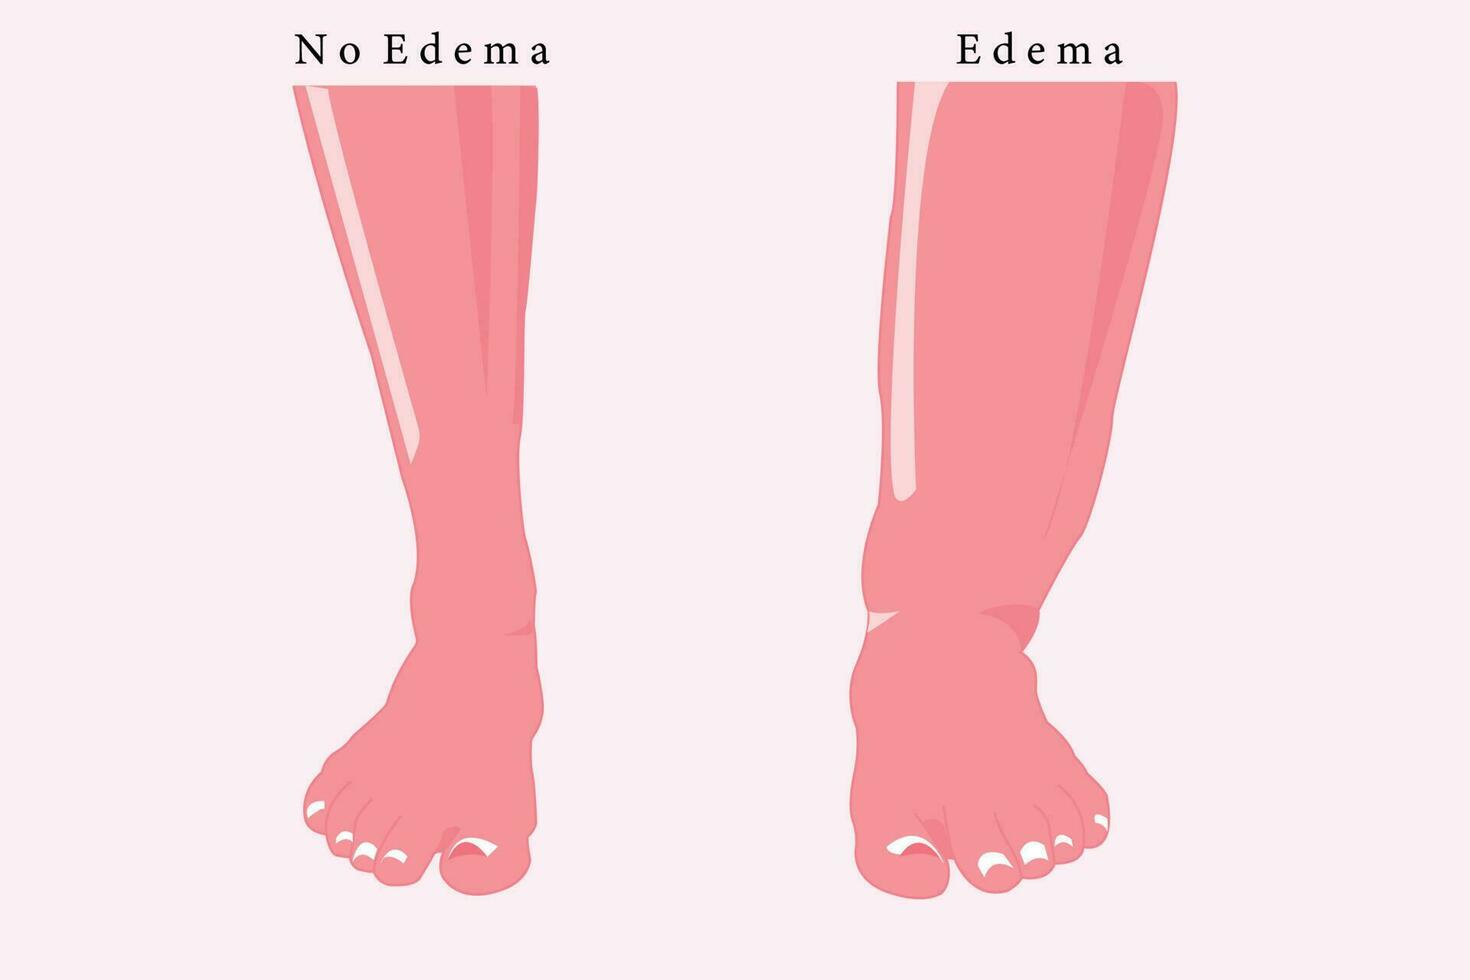 comparacion de normal pie y edema pie, plano ilustración para educación. eps 10 vector